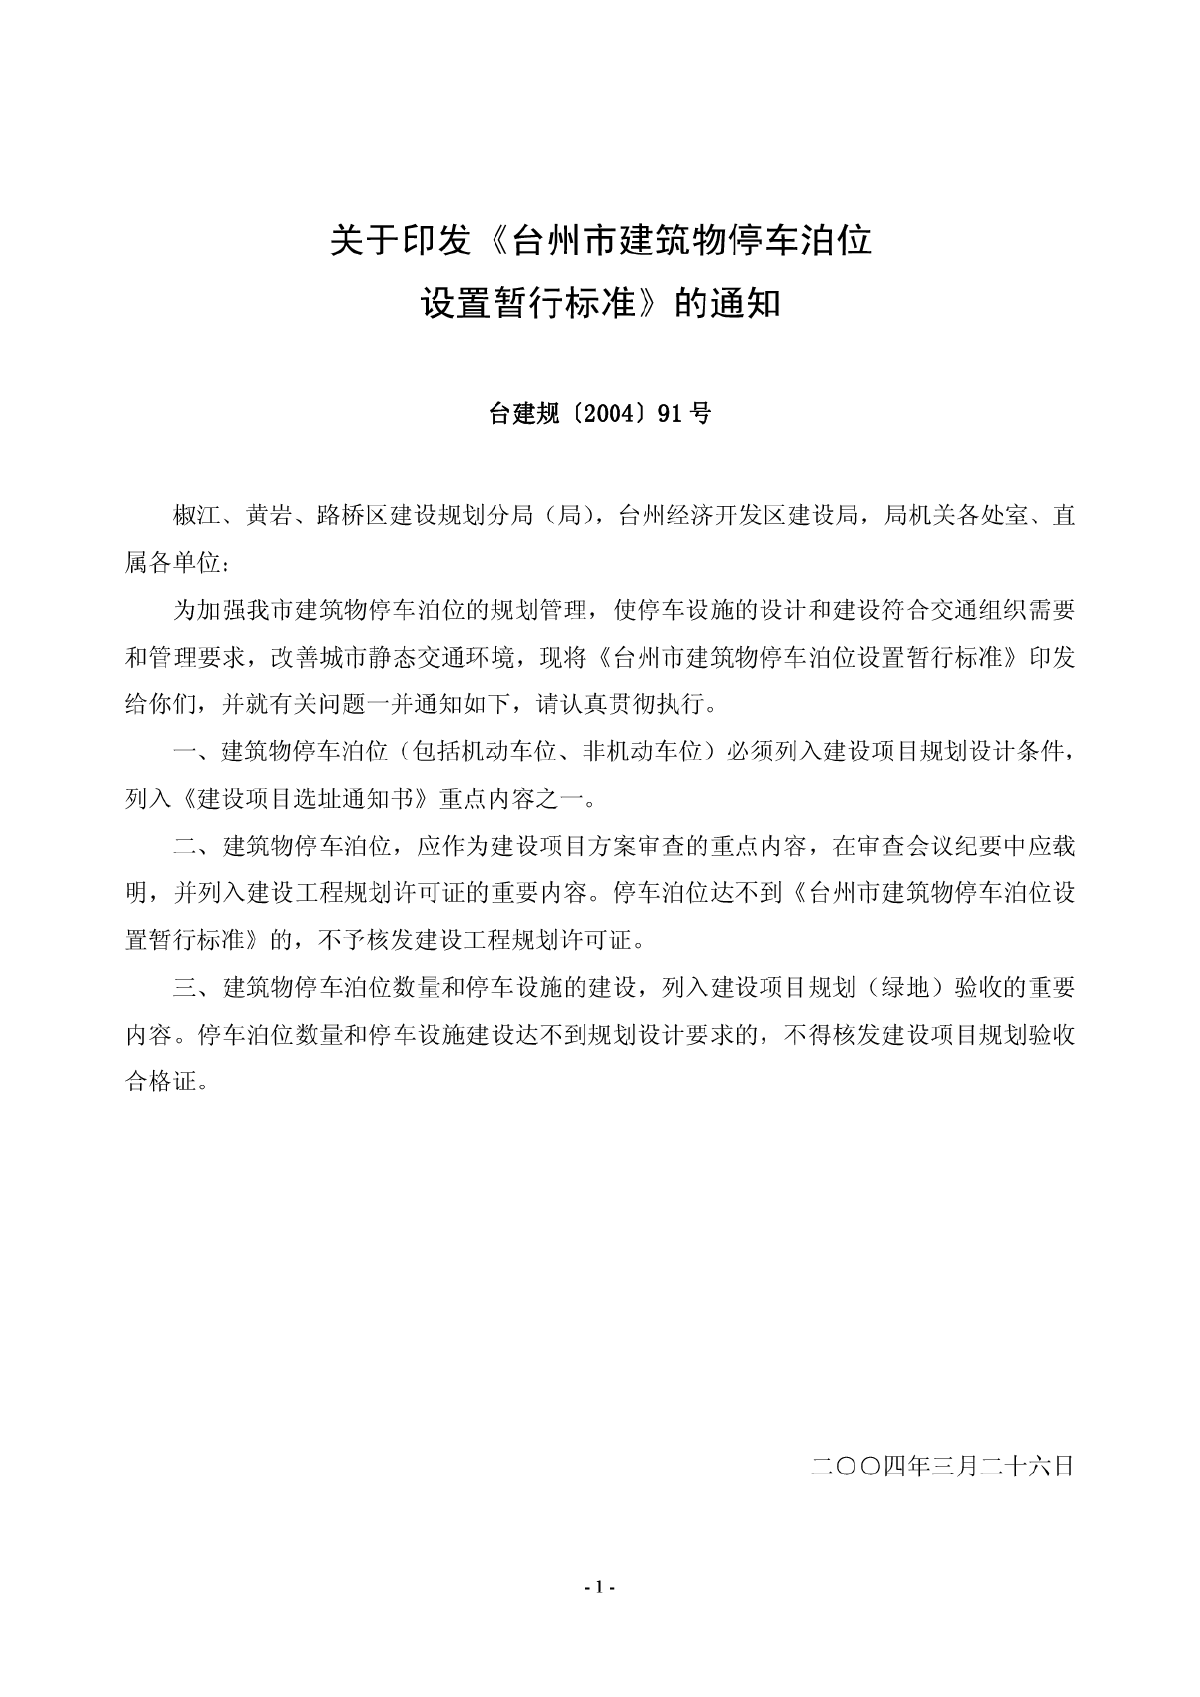 台州市建筑物停车泊位设置暂行标准